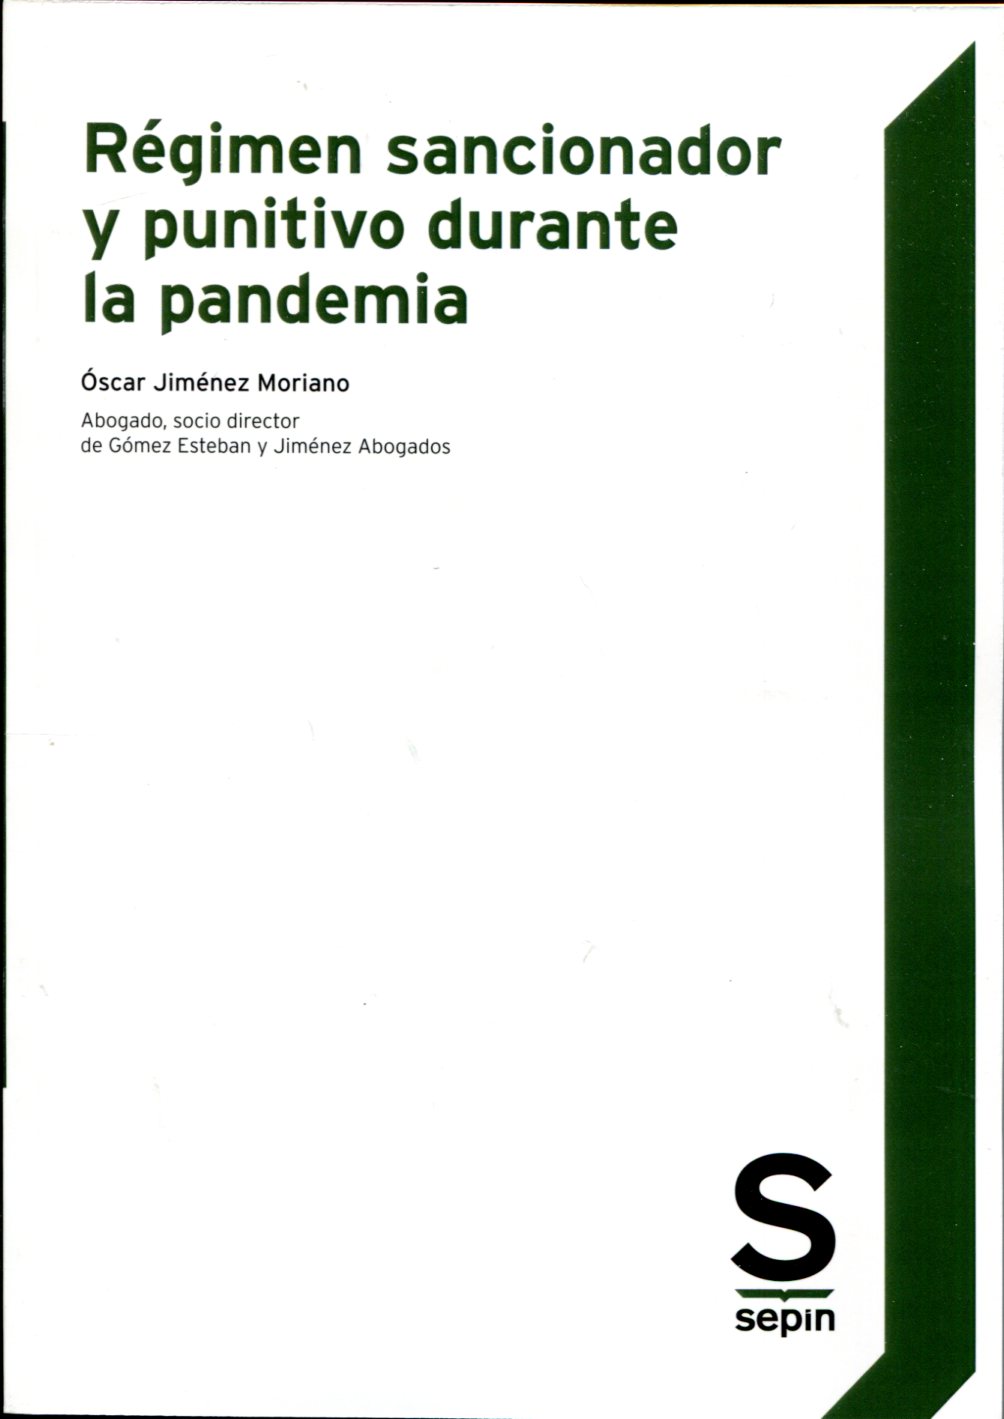 Régimen sancionador y punitivo durante la pandemia